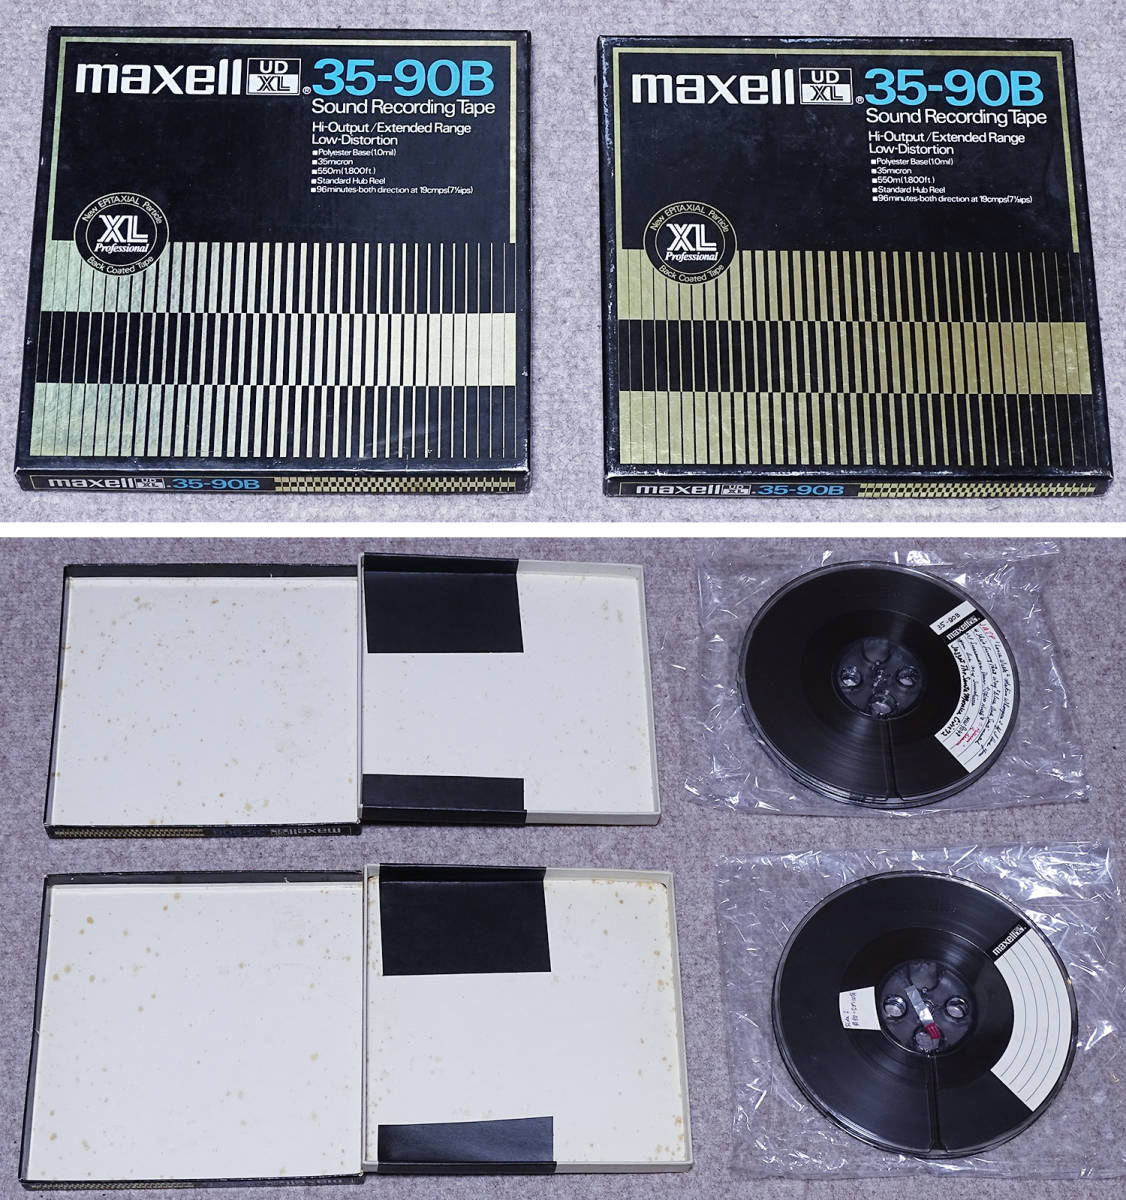 maxell マクセル 消去済み ７号 オープンリールテープ UD 35-60、UD 35-90、 UD XL 35-90B、 LN 25-120、LN 18-180 全15個 中古品_画像8